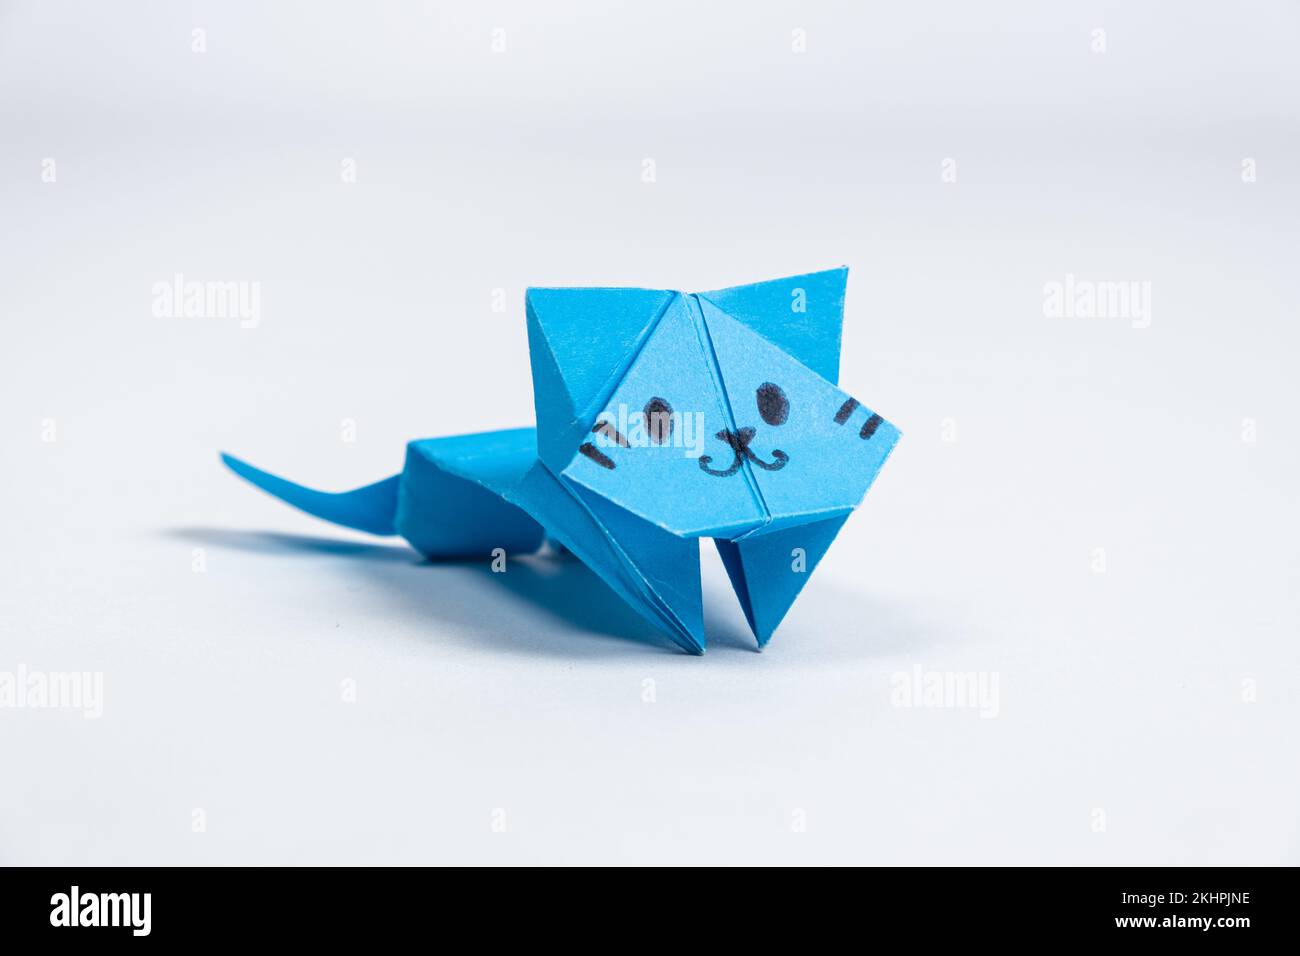 Gatto di carta origami blu, artigianato per bambini e adulti, figurine di animali fai da te, sfondo bianco Foto Stock